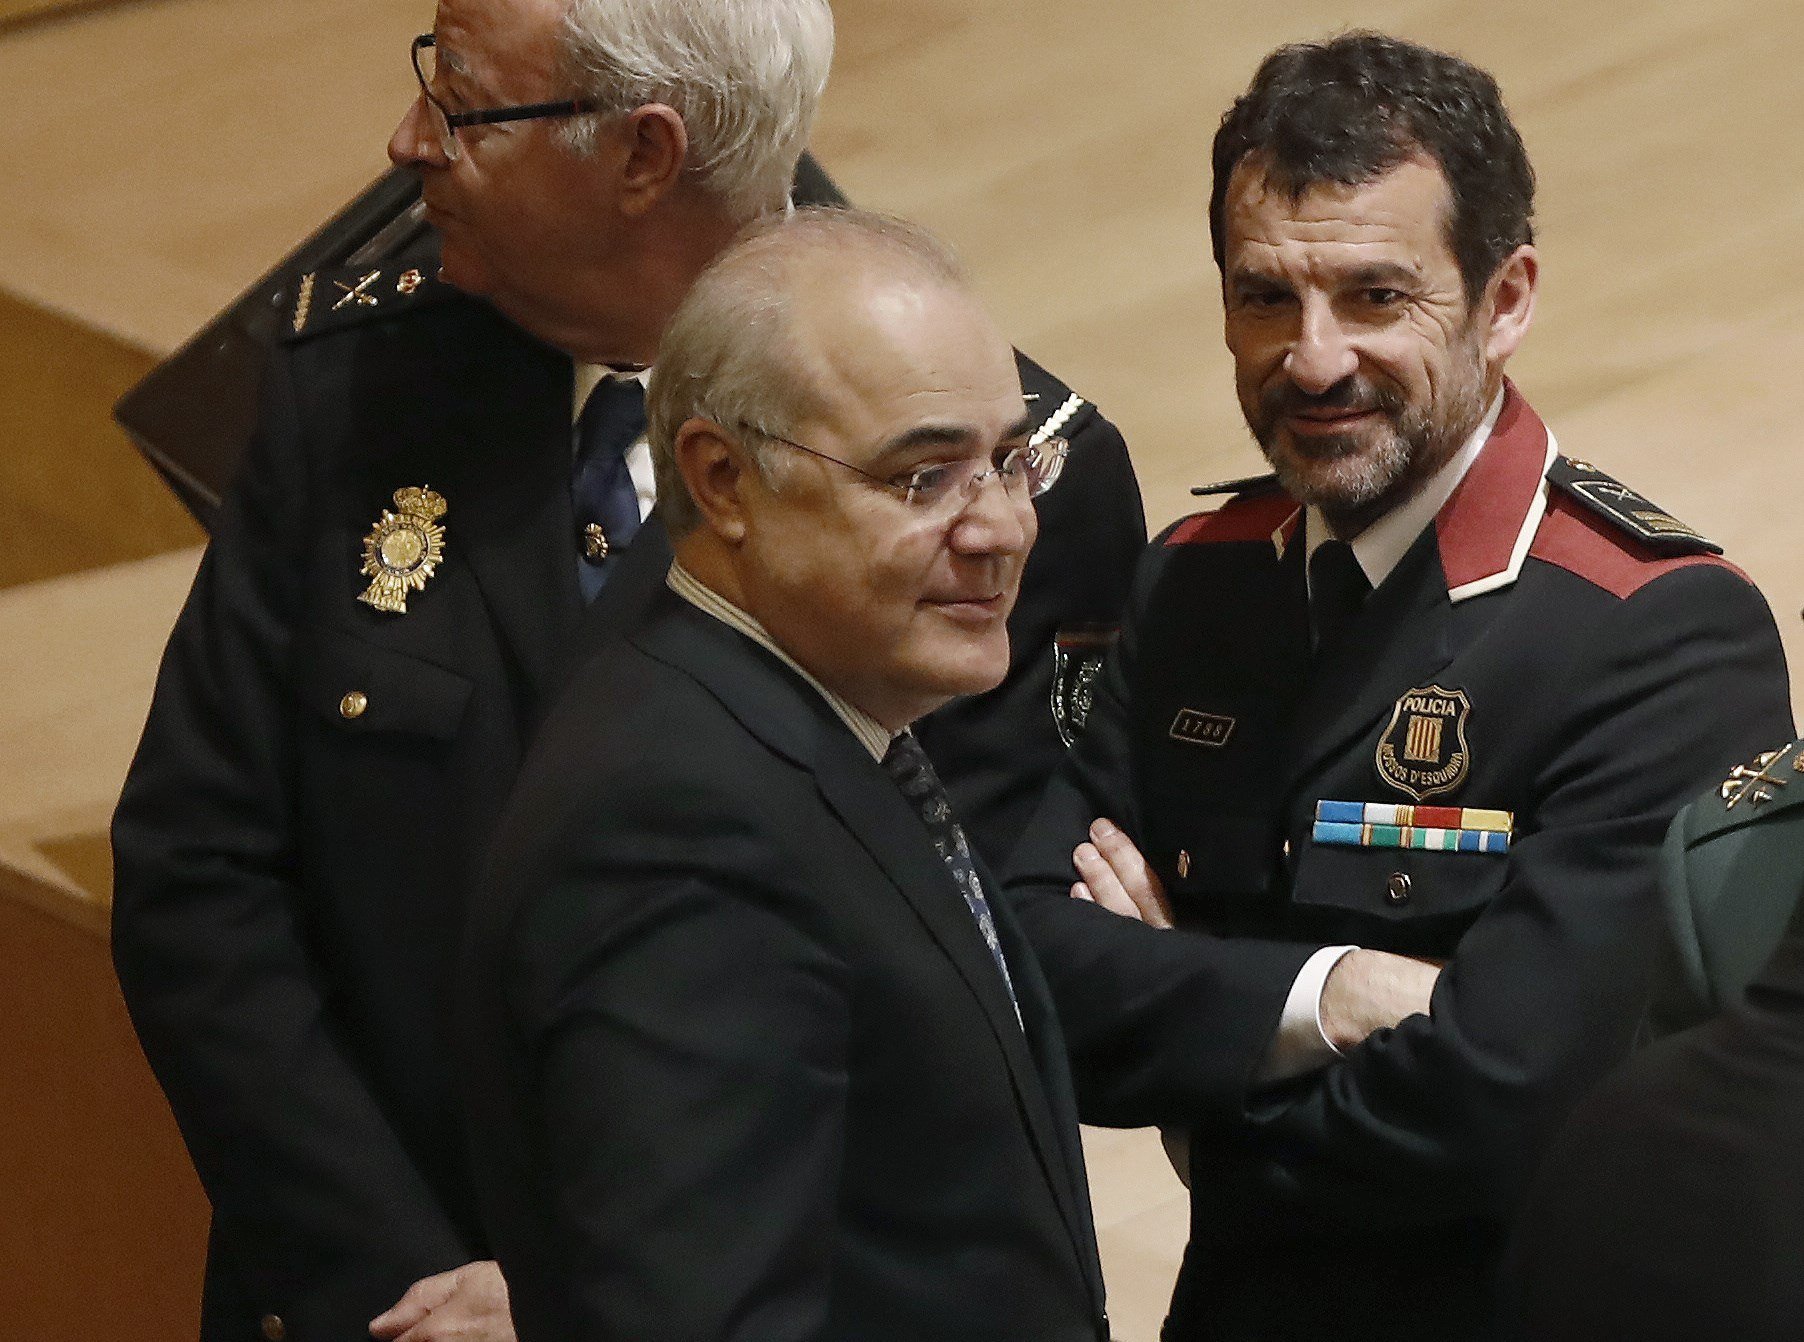 El Supremo rechaza la entrega de Puigdemont sólo por malversación